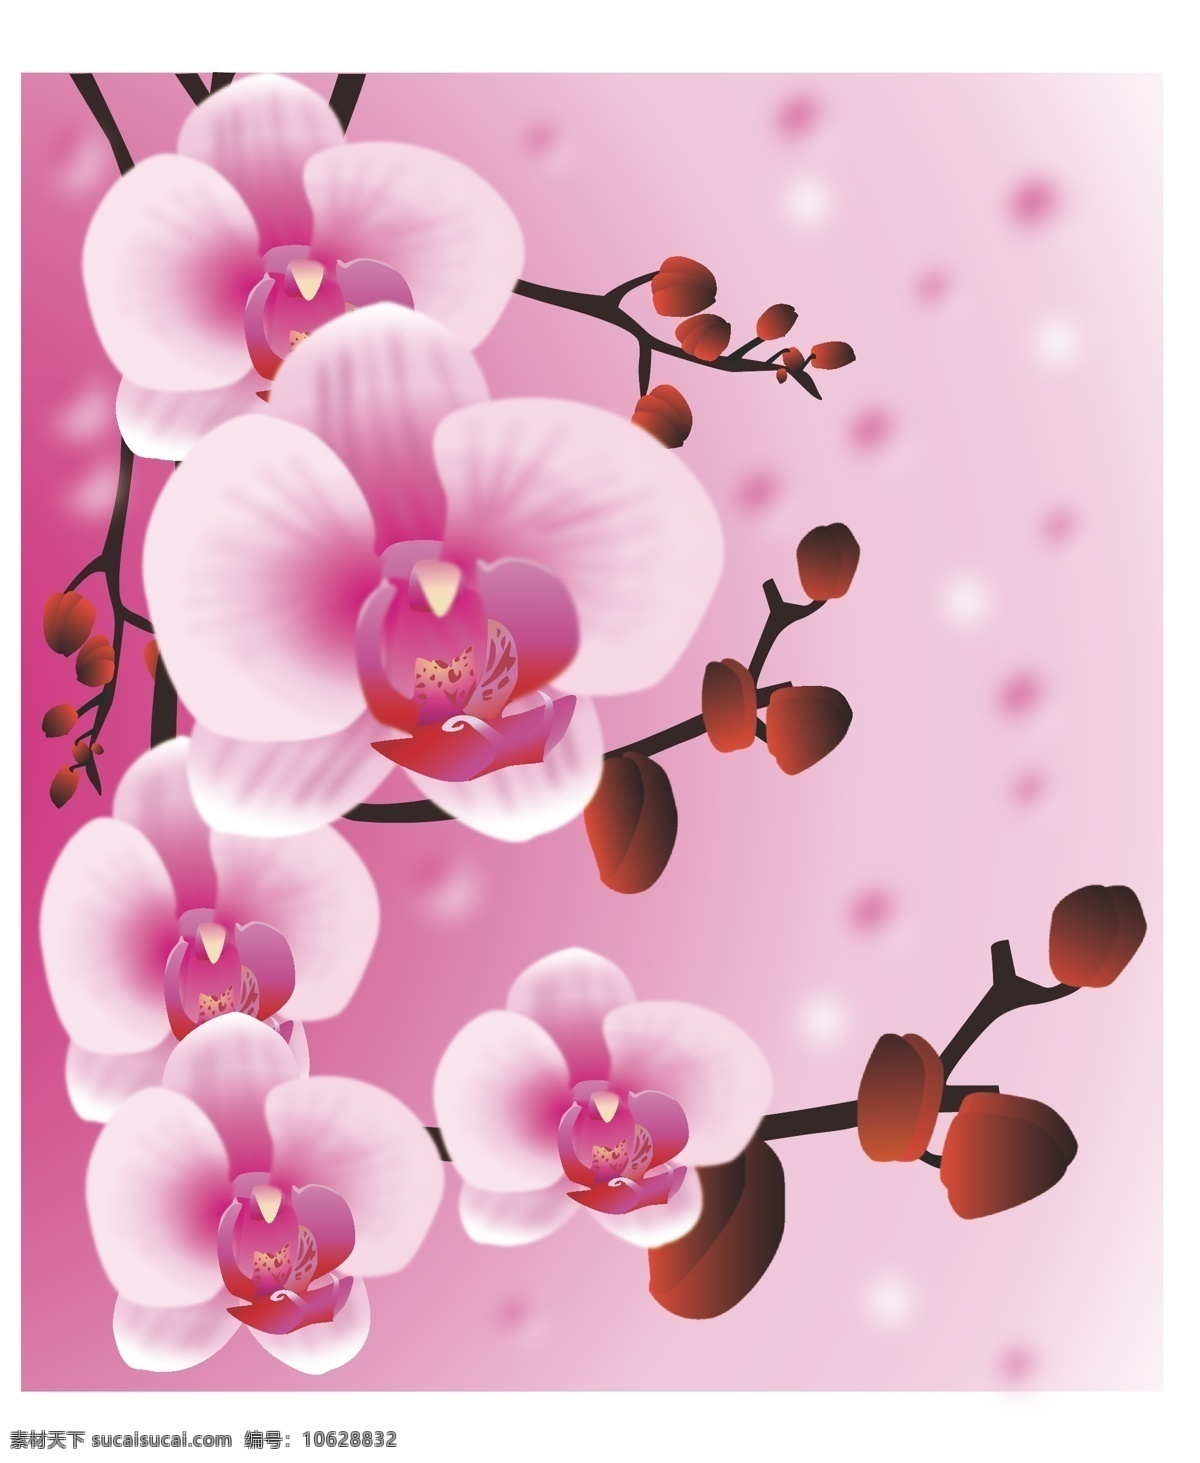 蝴蝶兰 花朵 矢量 背景 粉色 矢量素材 艺术 矢量图 其他矢量图